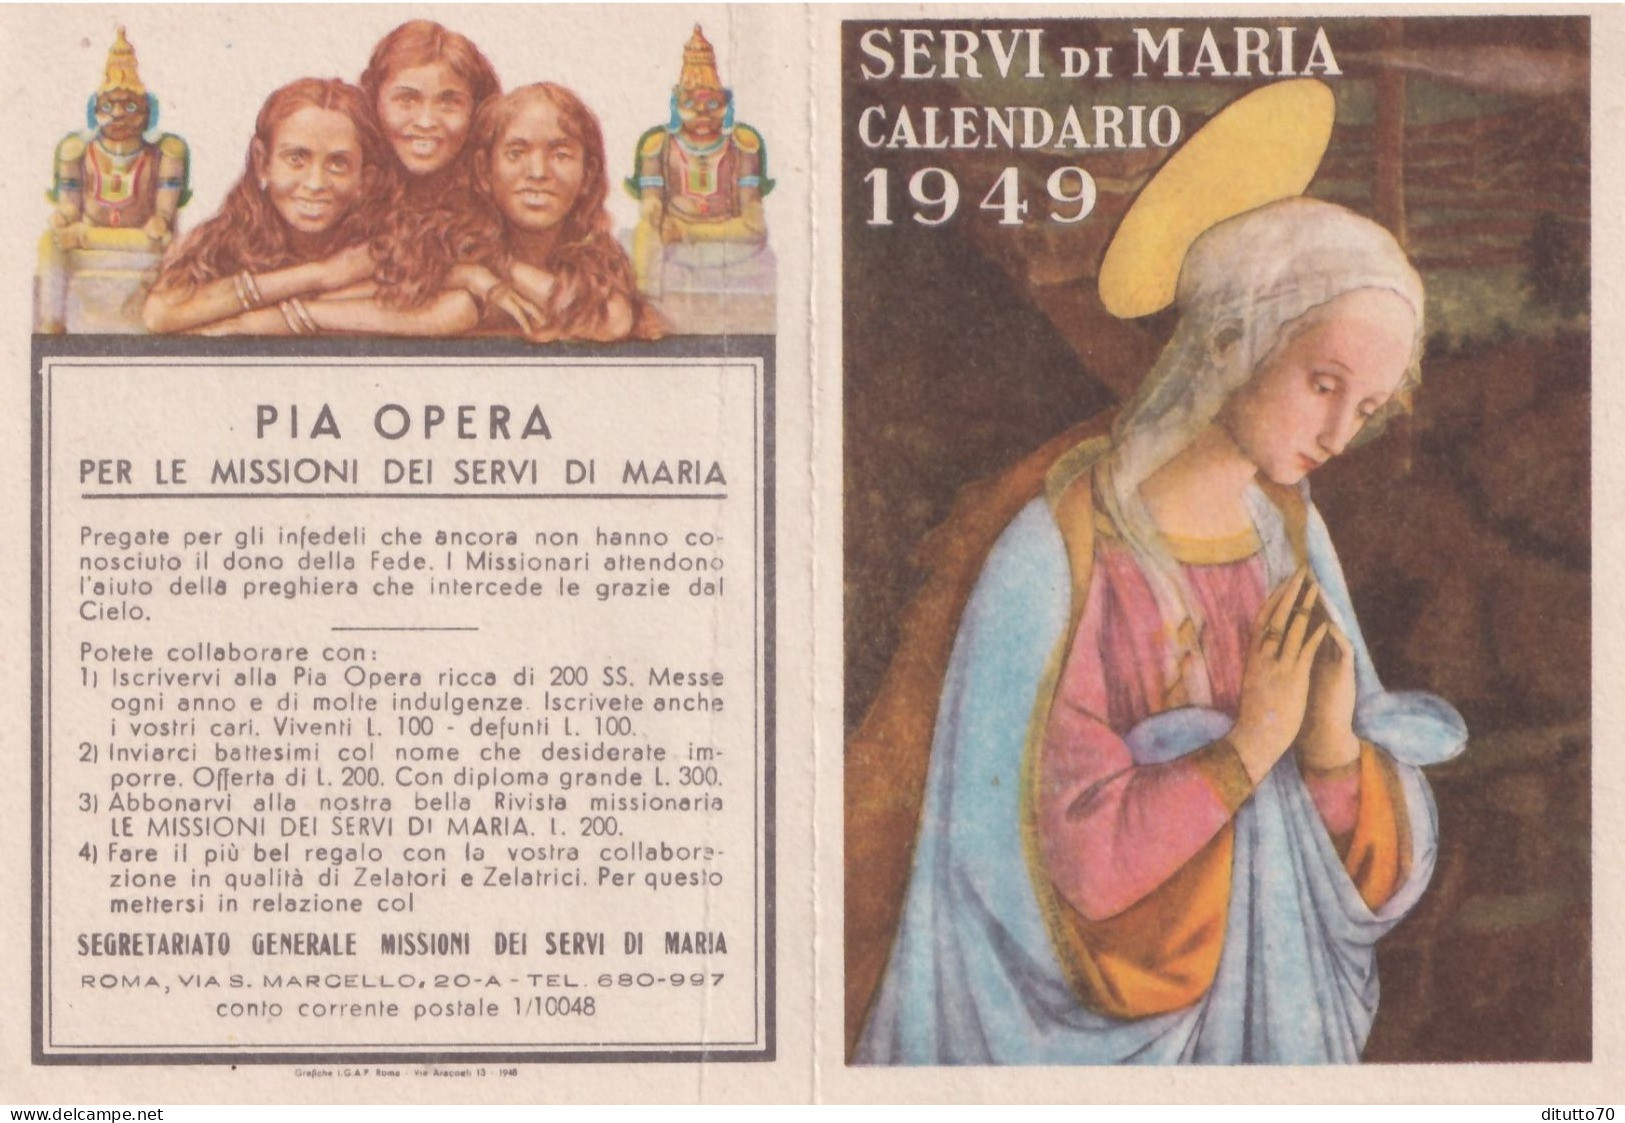 Calendarietto - Pia Opera Per Missioni Dei Servi Di Maria - Roma - Anno 1949 - Small : 1941-60